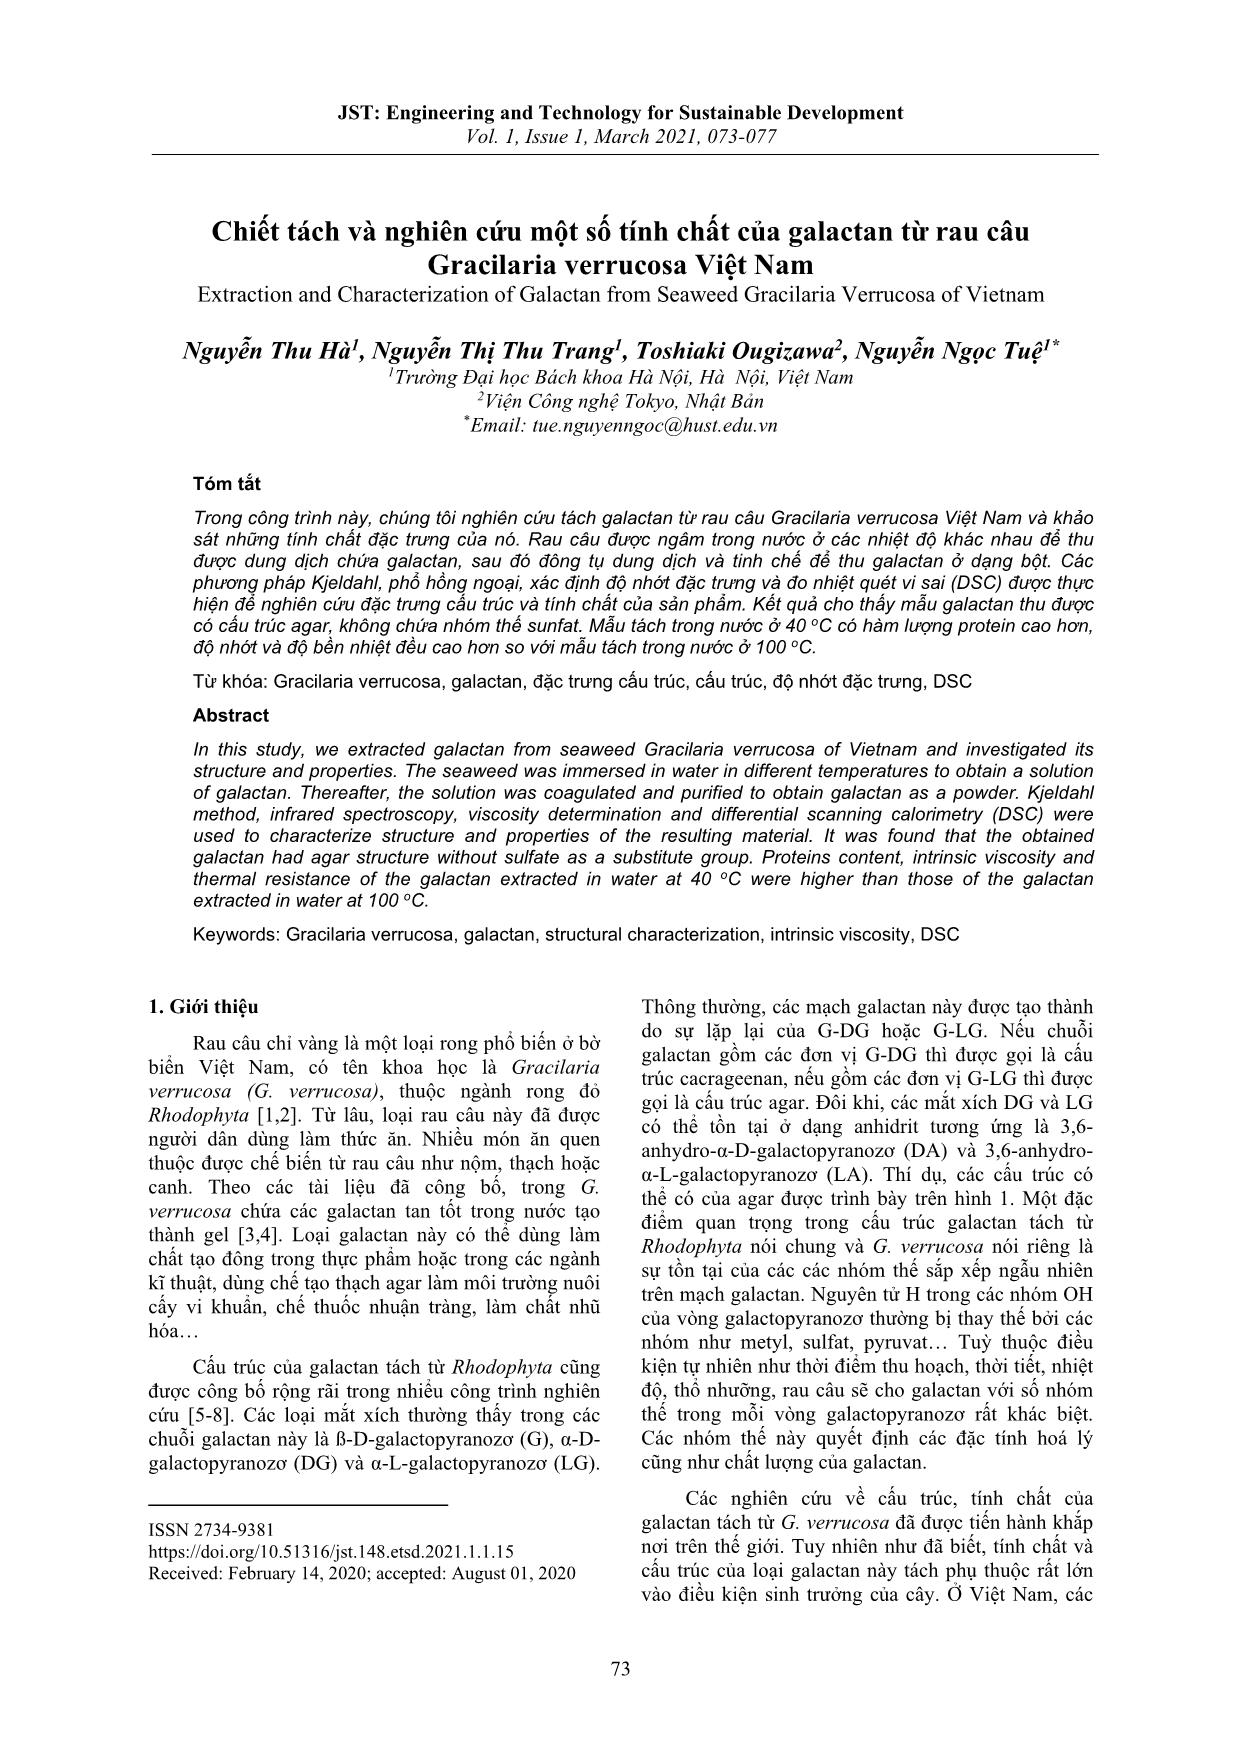 Chiết tách và nghiên cứu một số tính chất của galactan từ rau câu Gracilaria verrucosa Việt Nam trang 1